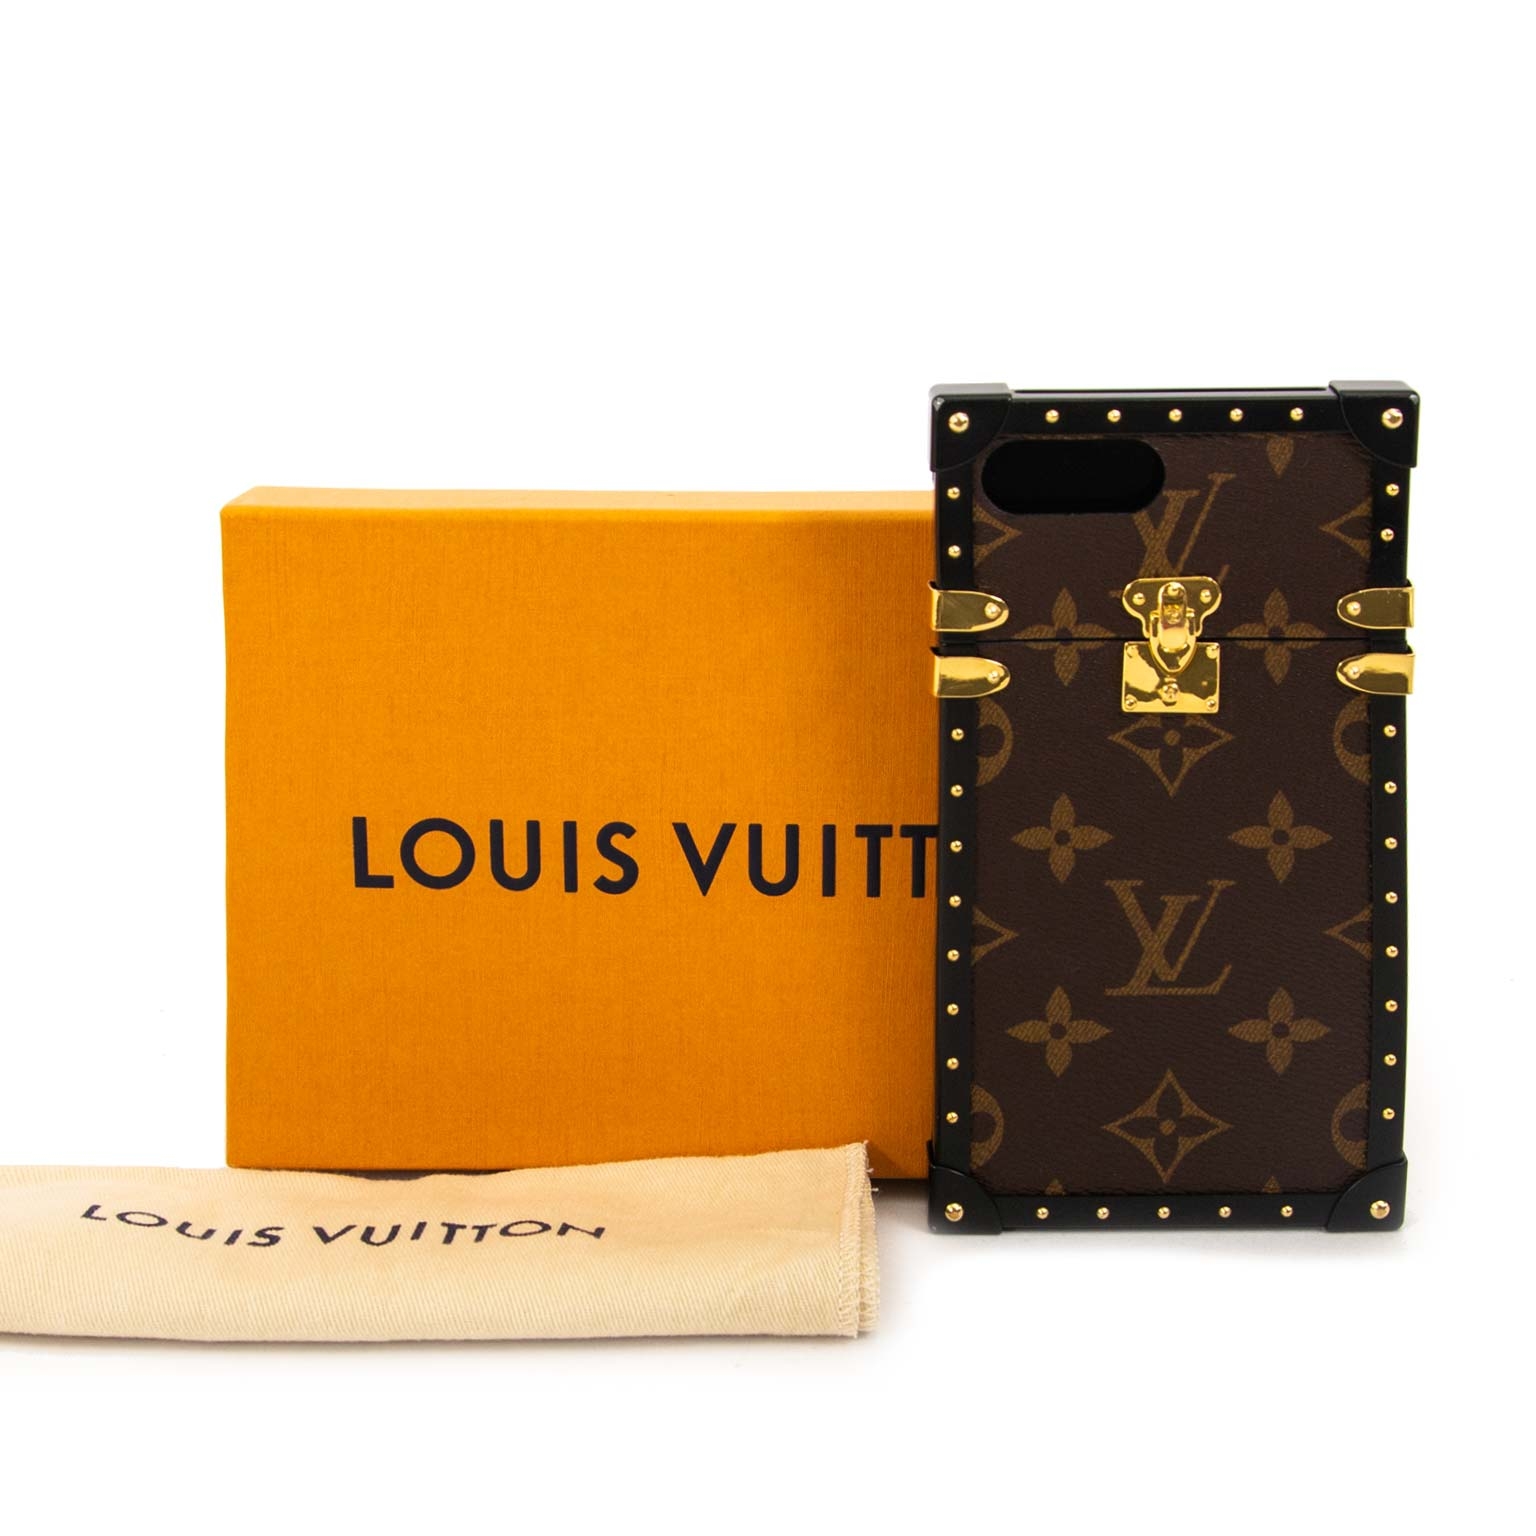 Iphone 8 Plus Case Louis Vuitton  Etsy